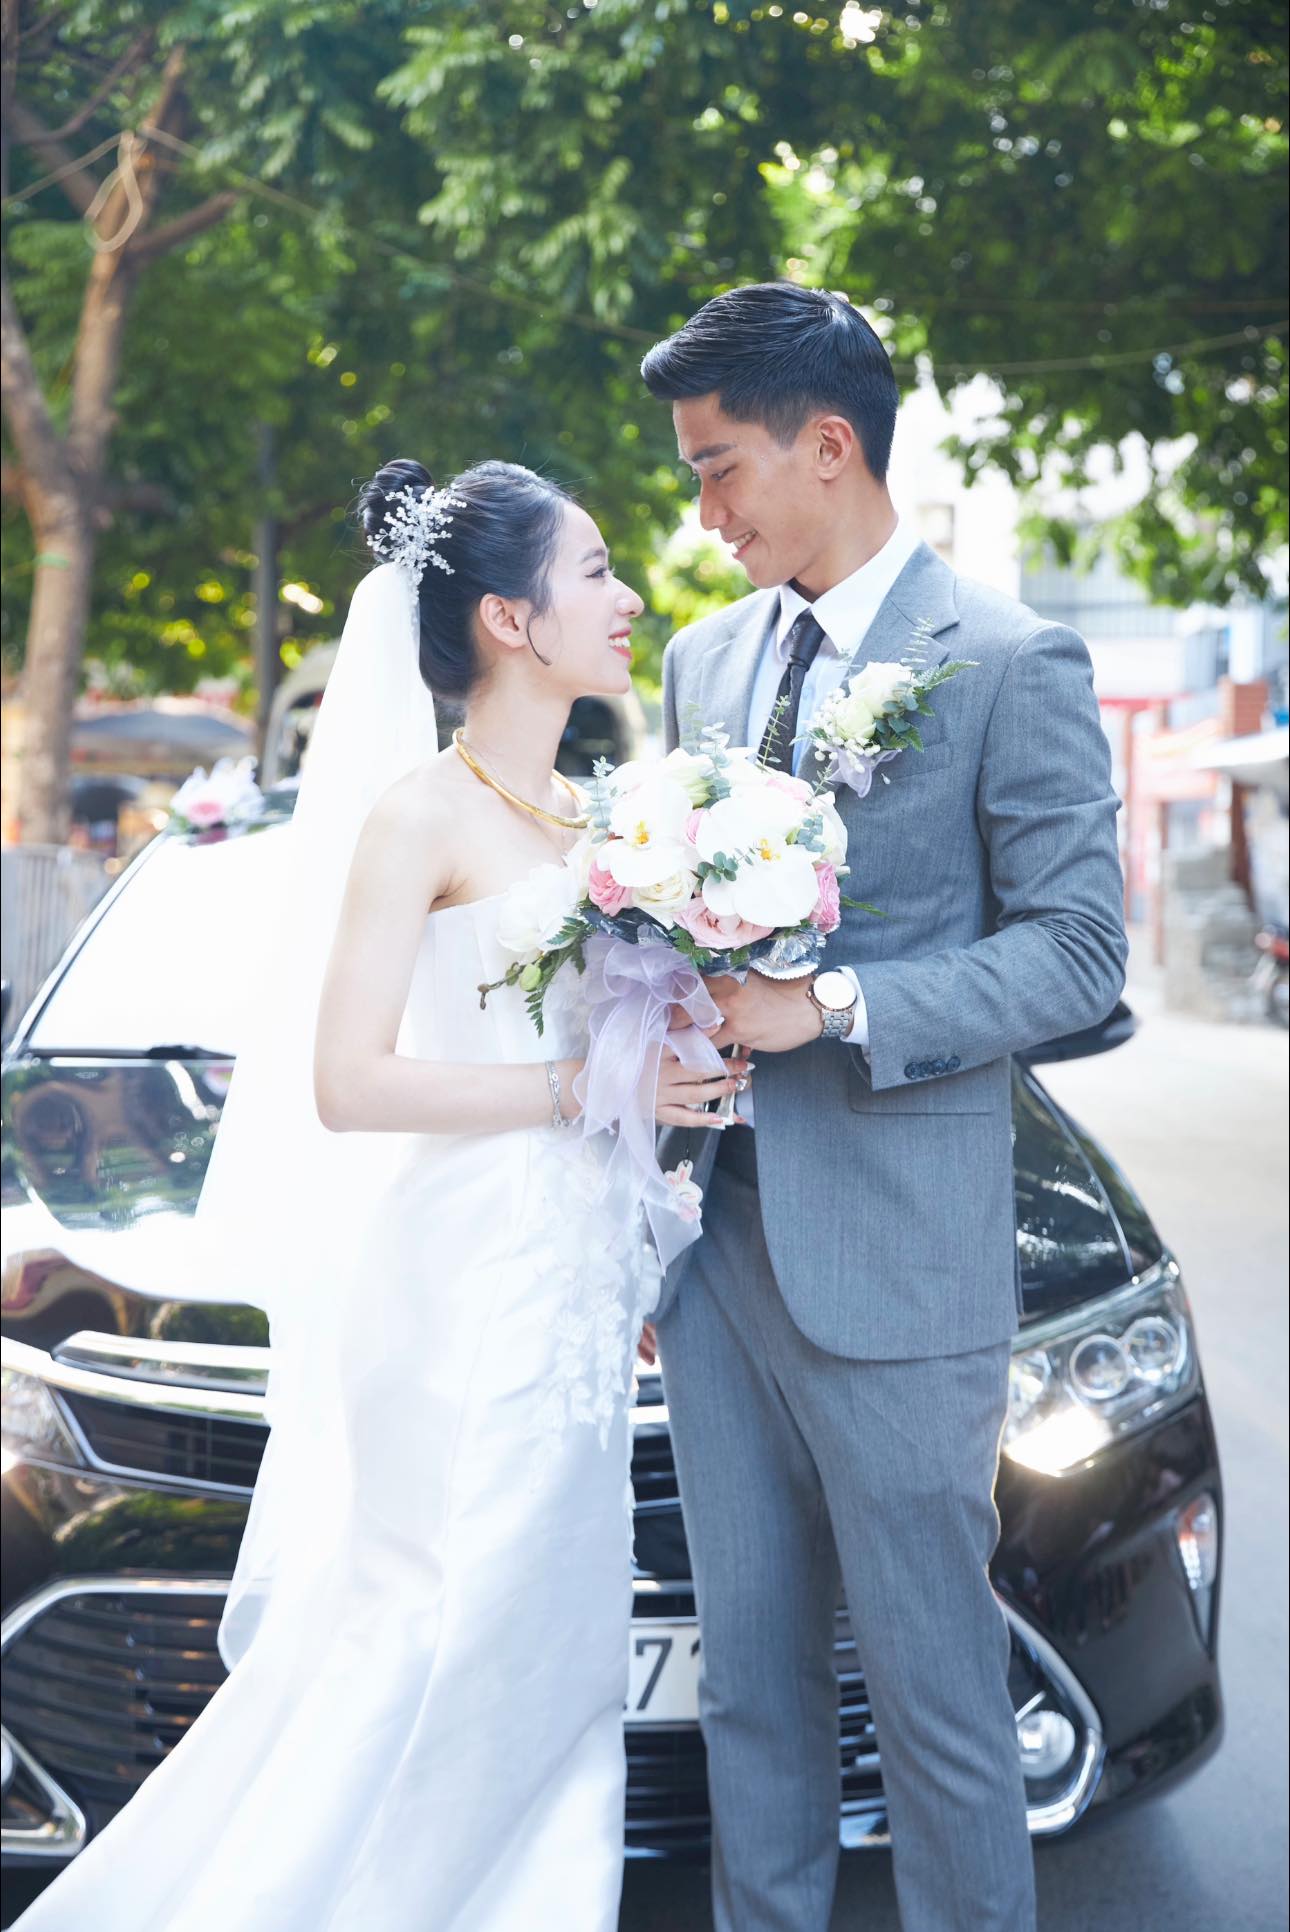 Cựu thủ môn U20 Việt Nam lấy vợ giáo viên, đám cưới không linh đình như Đoàn Văn Hậu nhưng trọn vẹn hạnh phúc- Ảnh 6.